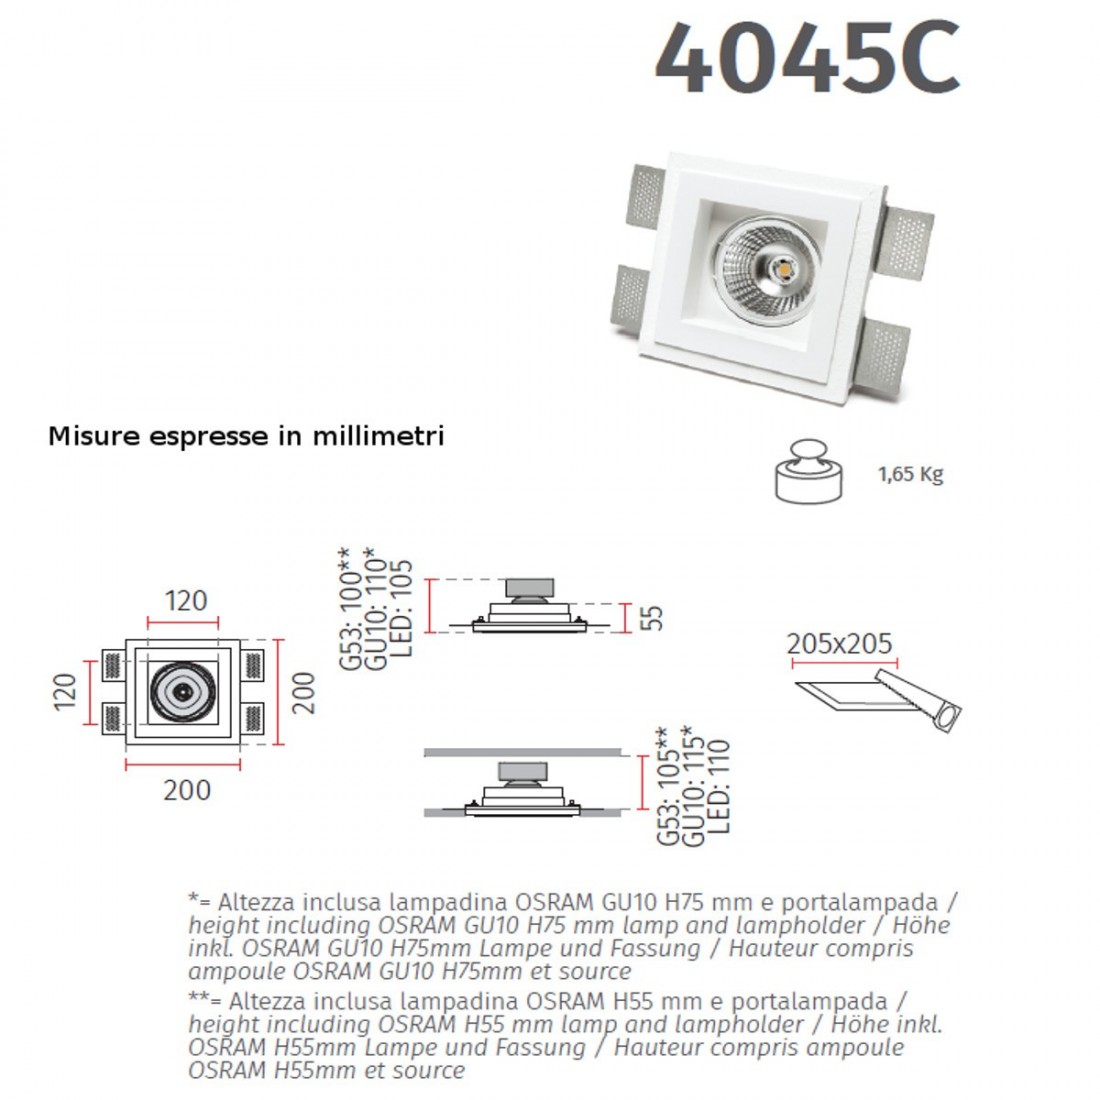 Faretto incasso BF-4045C 35 GU10 LED gesso bianco verniciabile quadrato vetro scomparsa cartongesso interno IP20